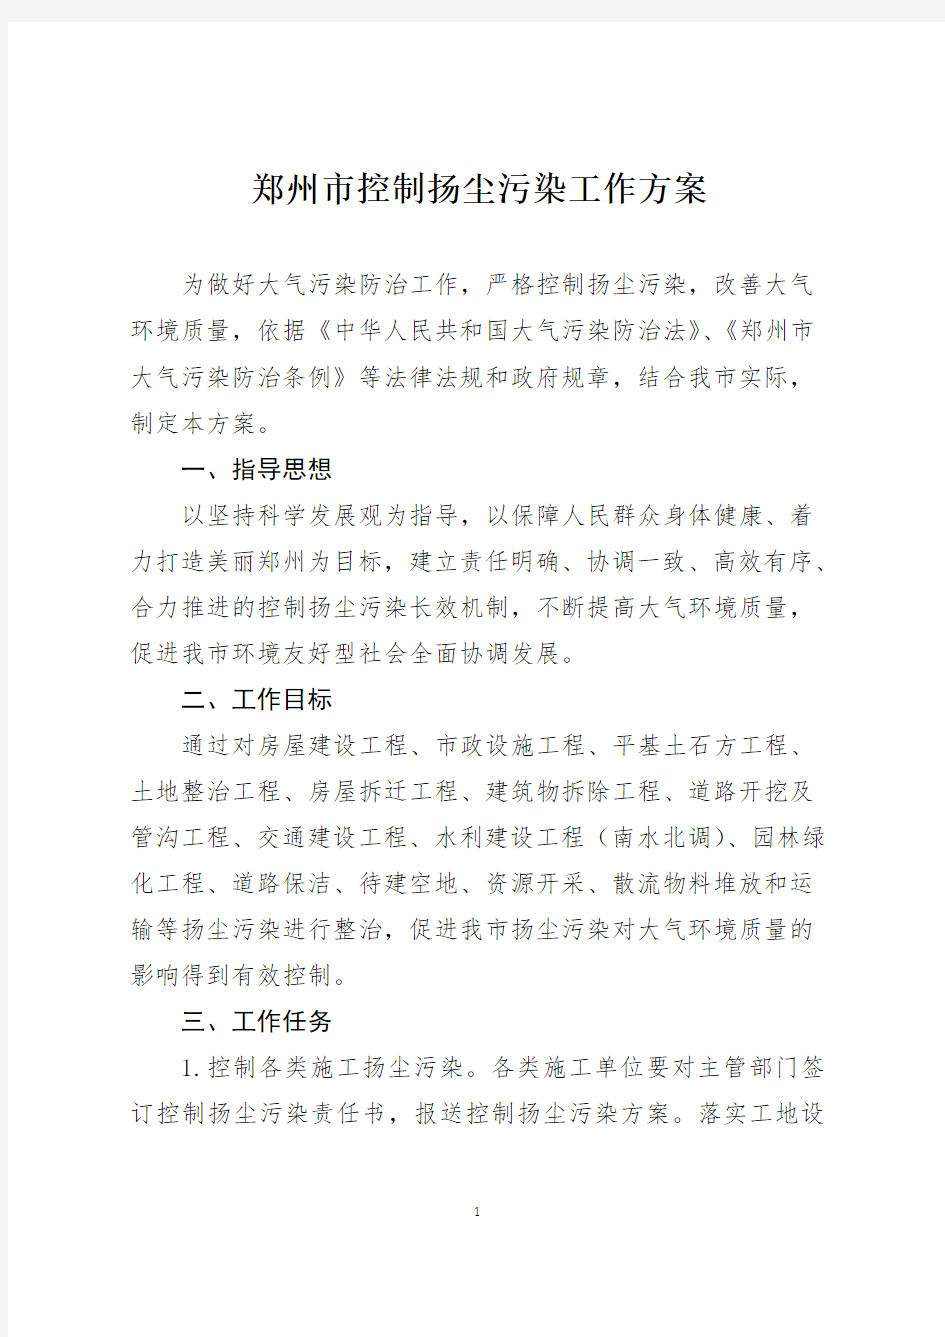 郑州市控制扬尘污染工作方案的通知 郑政〔2013〕18号